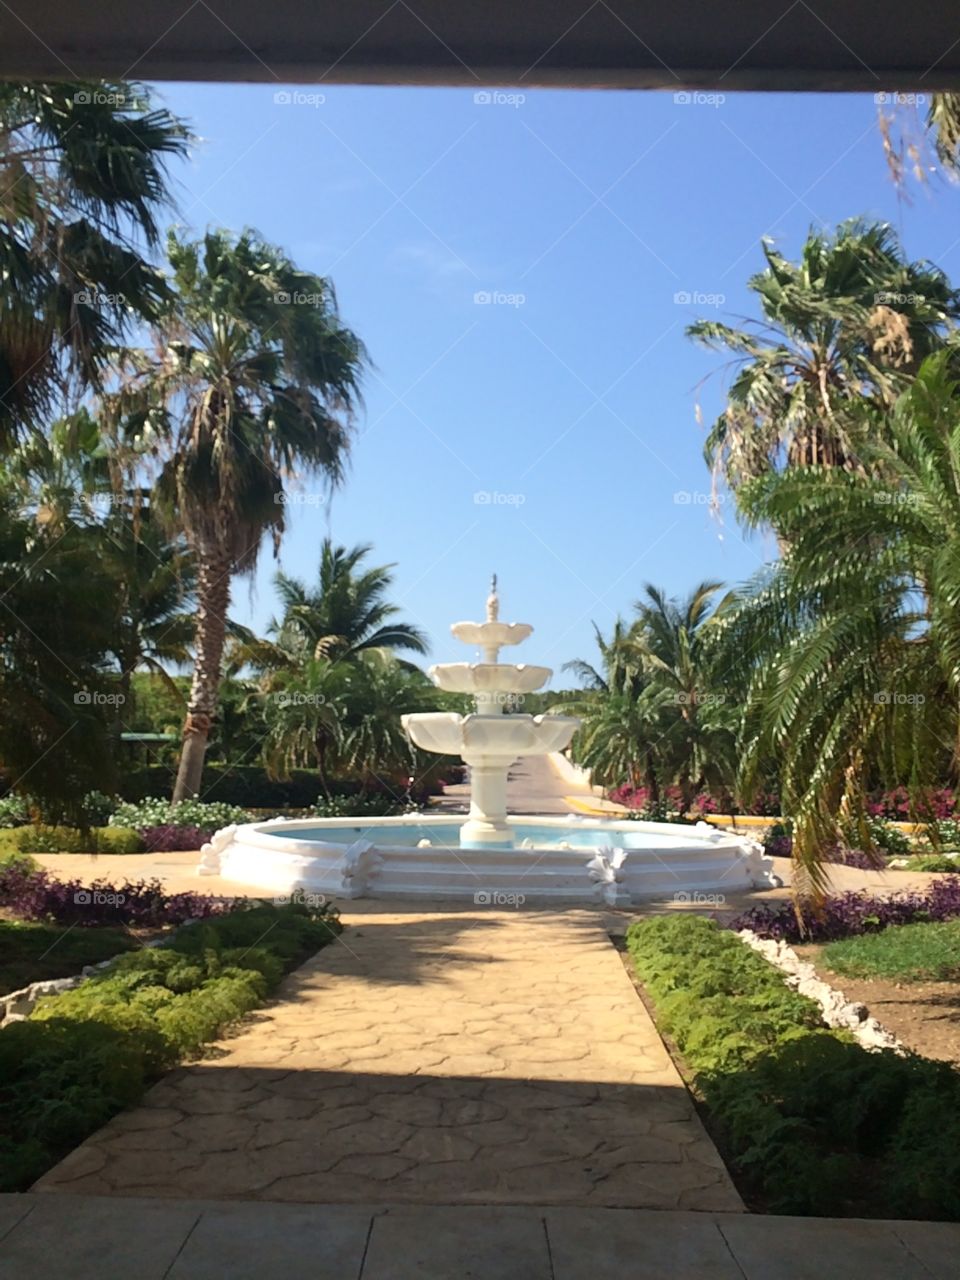 Resort Entrance Fountain in Cuba🇨🇺